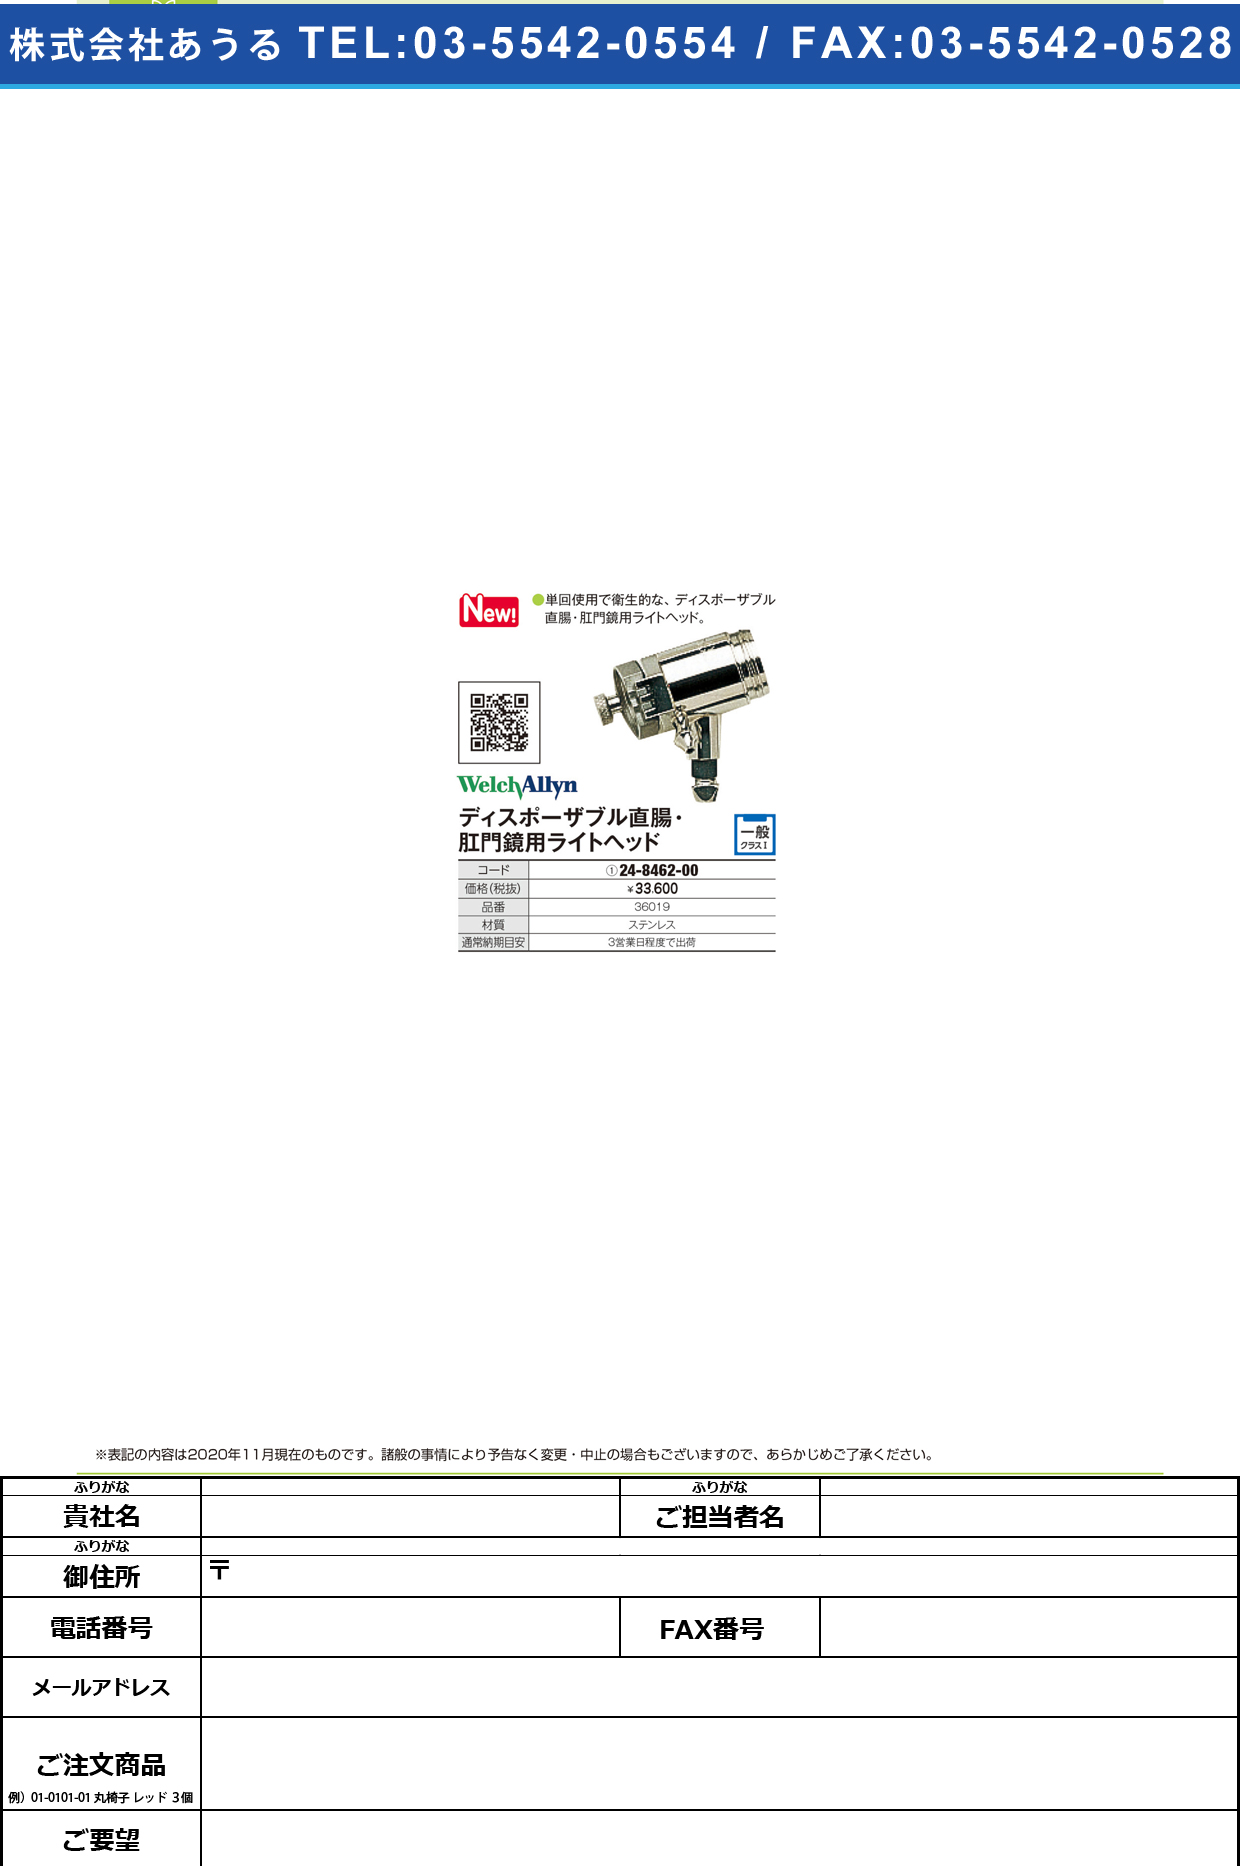 ファイバーオプティックライトヘッド 3601936019(24-8462-00)【ウェルチ・アレン・ジャパン】(販売単位:1)